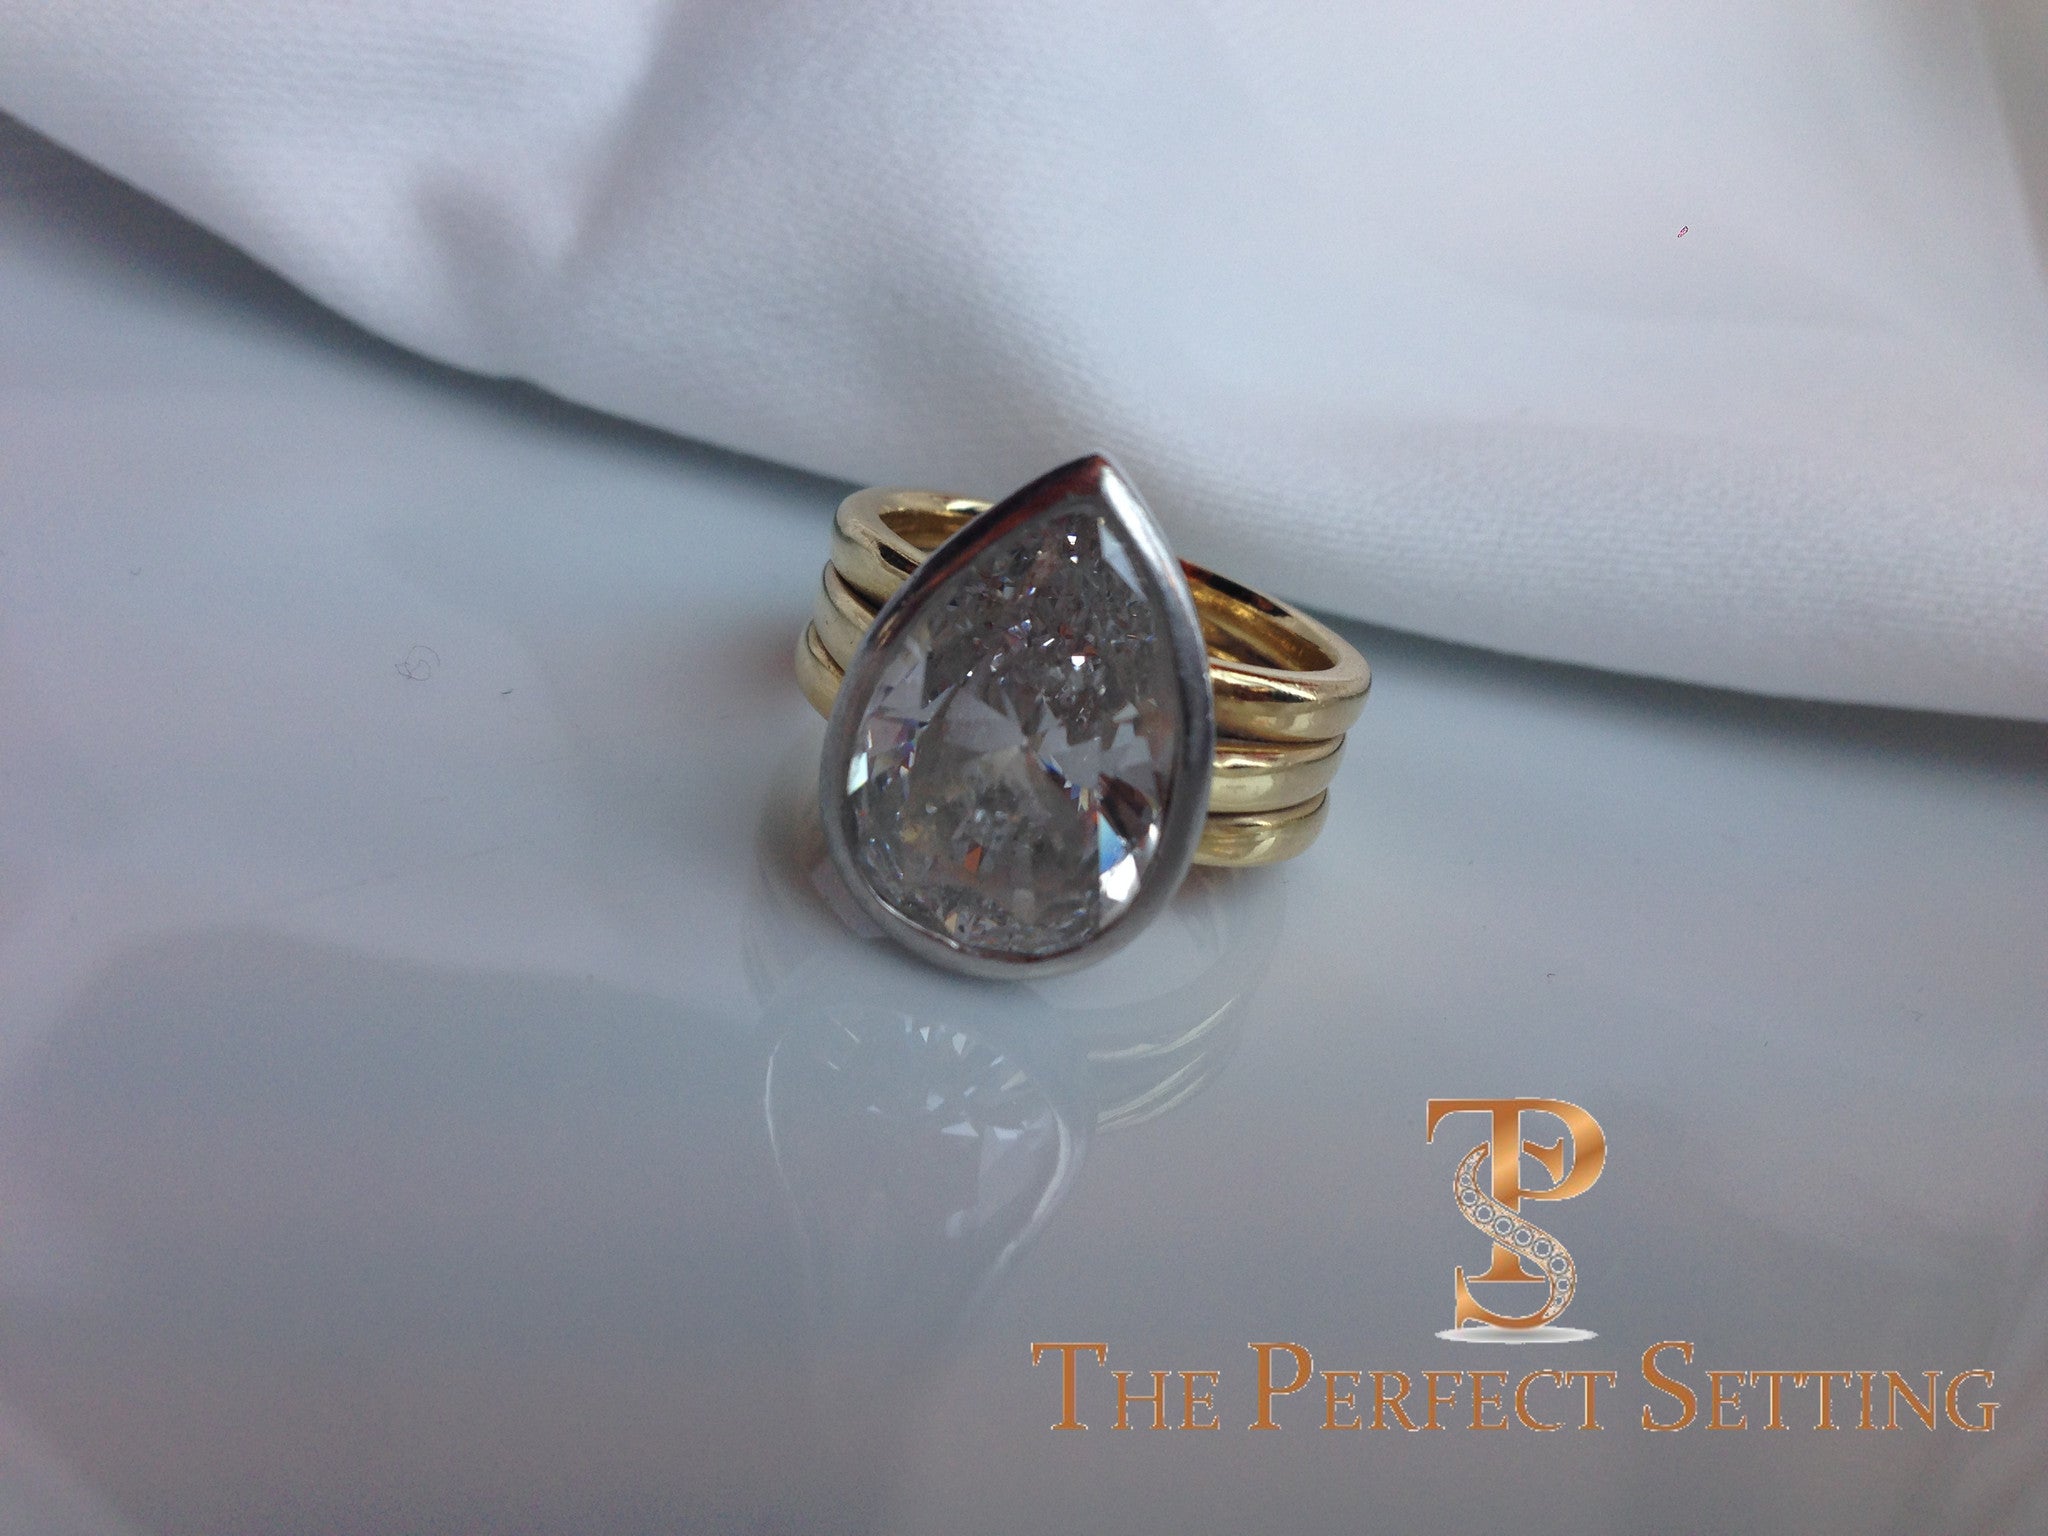 18k Yellow Gold And Platinum Custom Diamond Engagement Ring